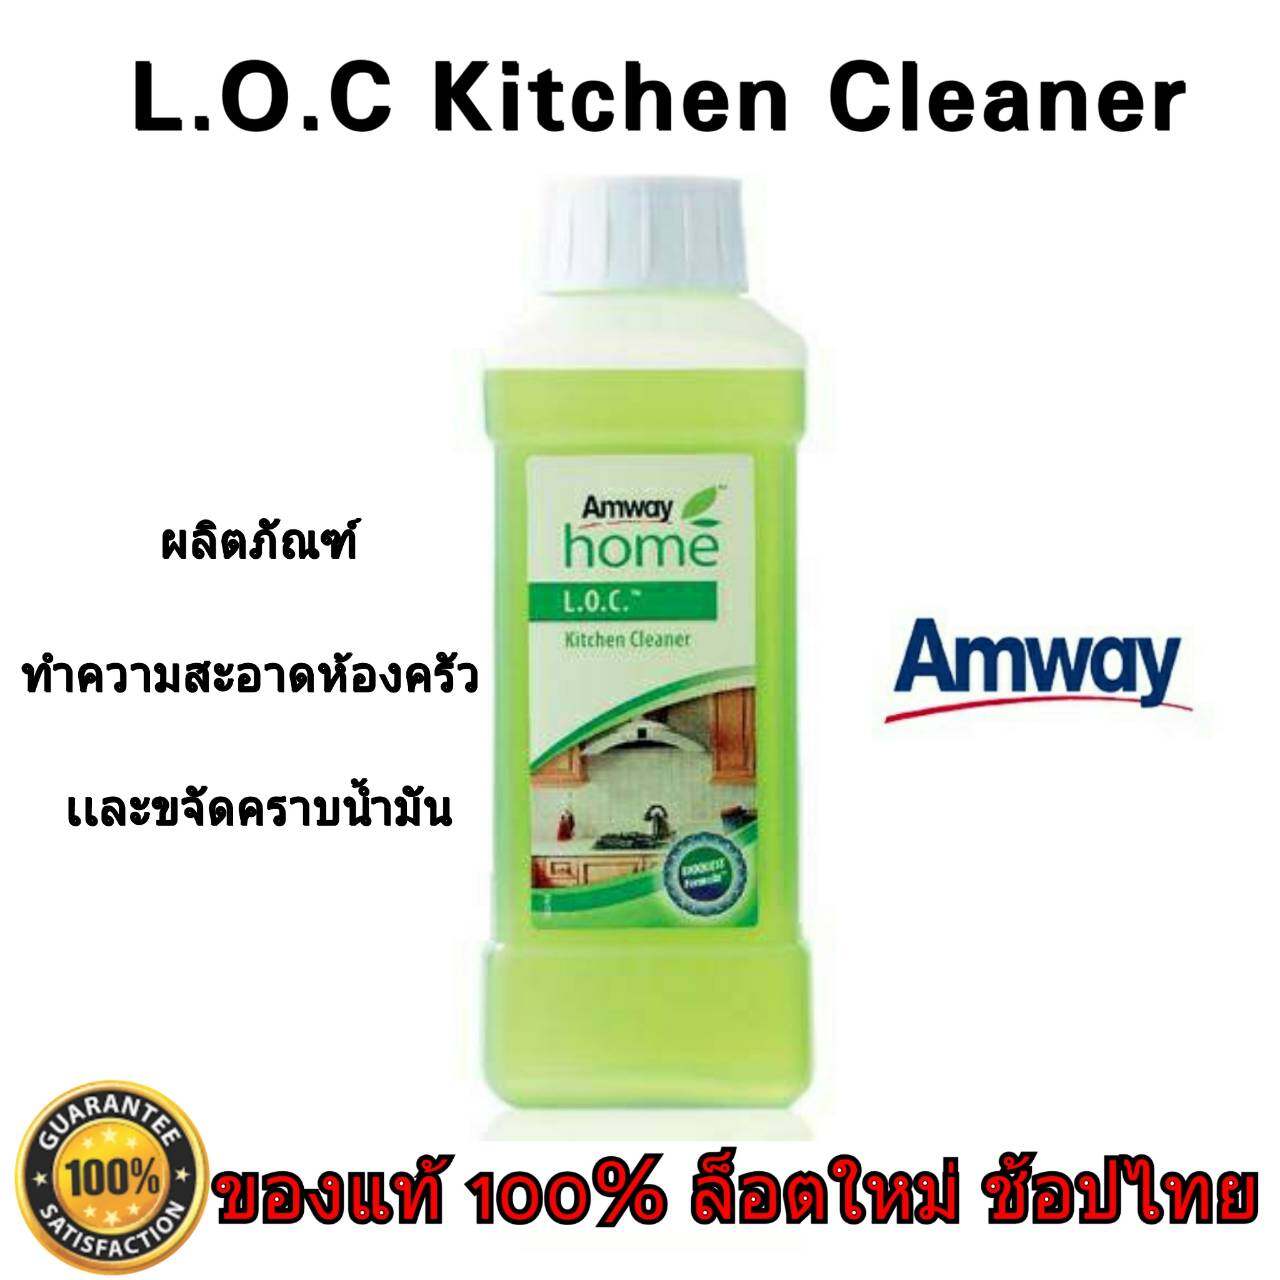 [ของแท้ 100% ช้อปไทย] Amway home L.O.C. Kitchen Cleaner ผลิตภัณฑ์ทำความสะอาดห้องครัว แอมเวย์ โฮม ช่วยทำความสะอาดห้องครัวได้เป็นอย่างดี 1 ขวด 500 ml